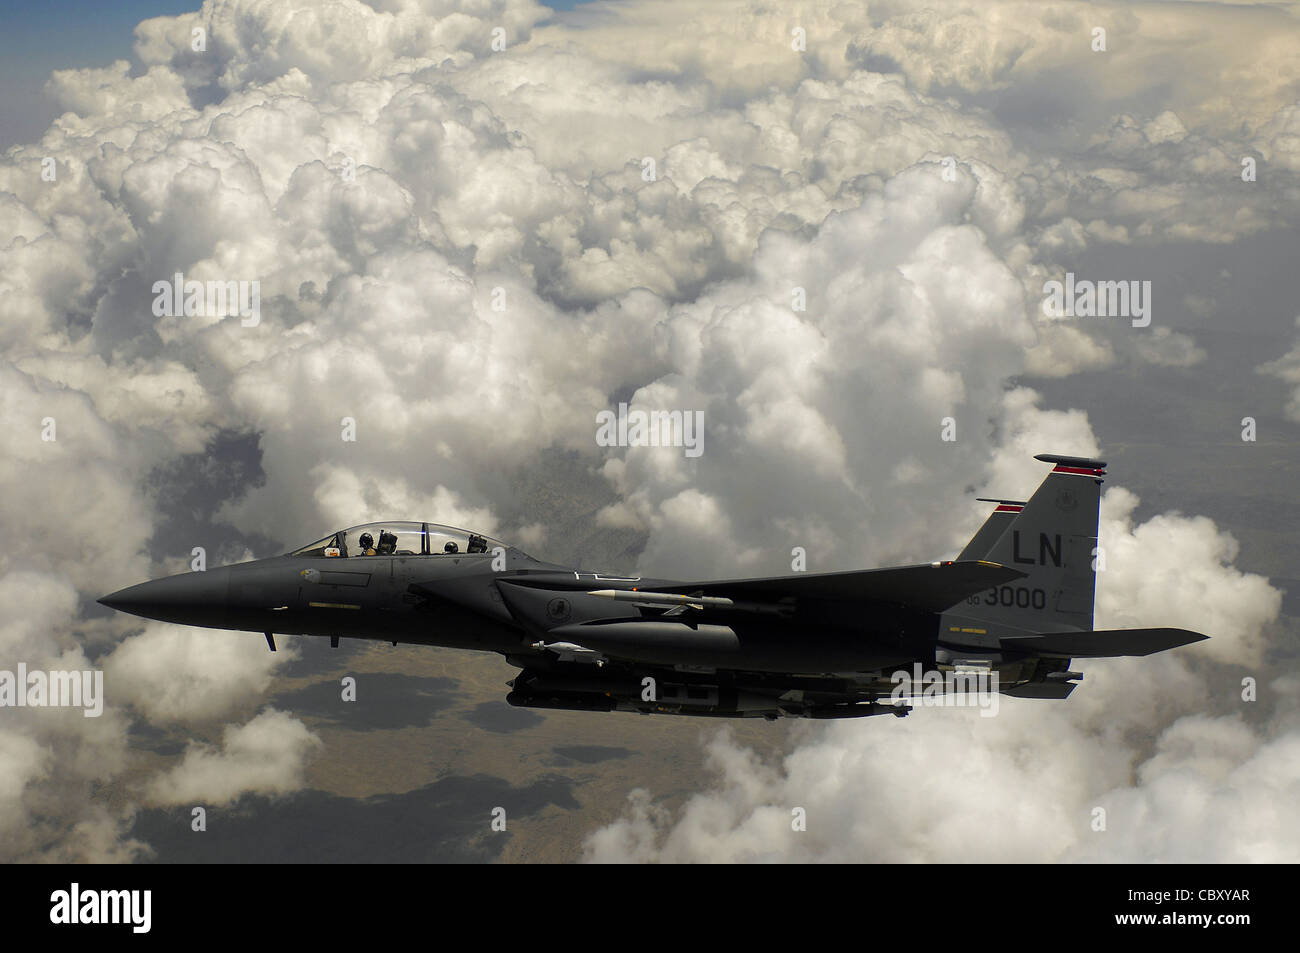 Ein F-15E Strike Eagle der Luftwaffe wartet auf seinen Flügelmann, nachdem er während einer Mission über Afghanistan Treibstoff erhalten hat. F-15Es verwendete GBU-31 und GBU-38s, um anti-afghanische Kräfte in Kampfpositionen abzuschrecken. Stockfoto